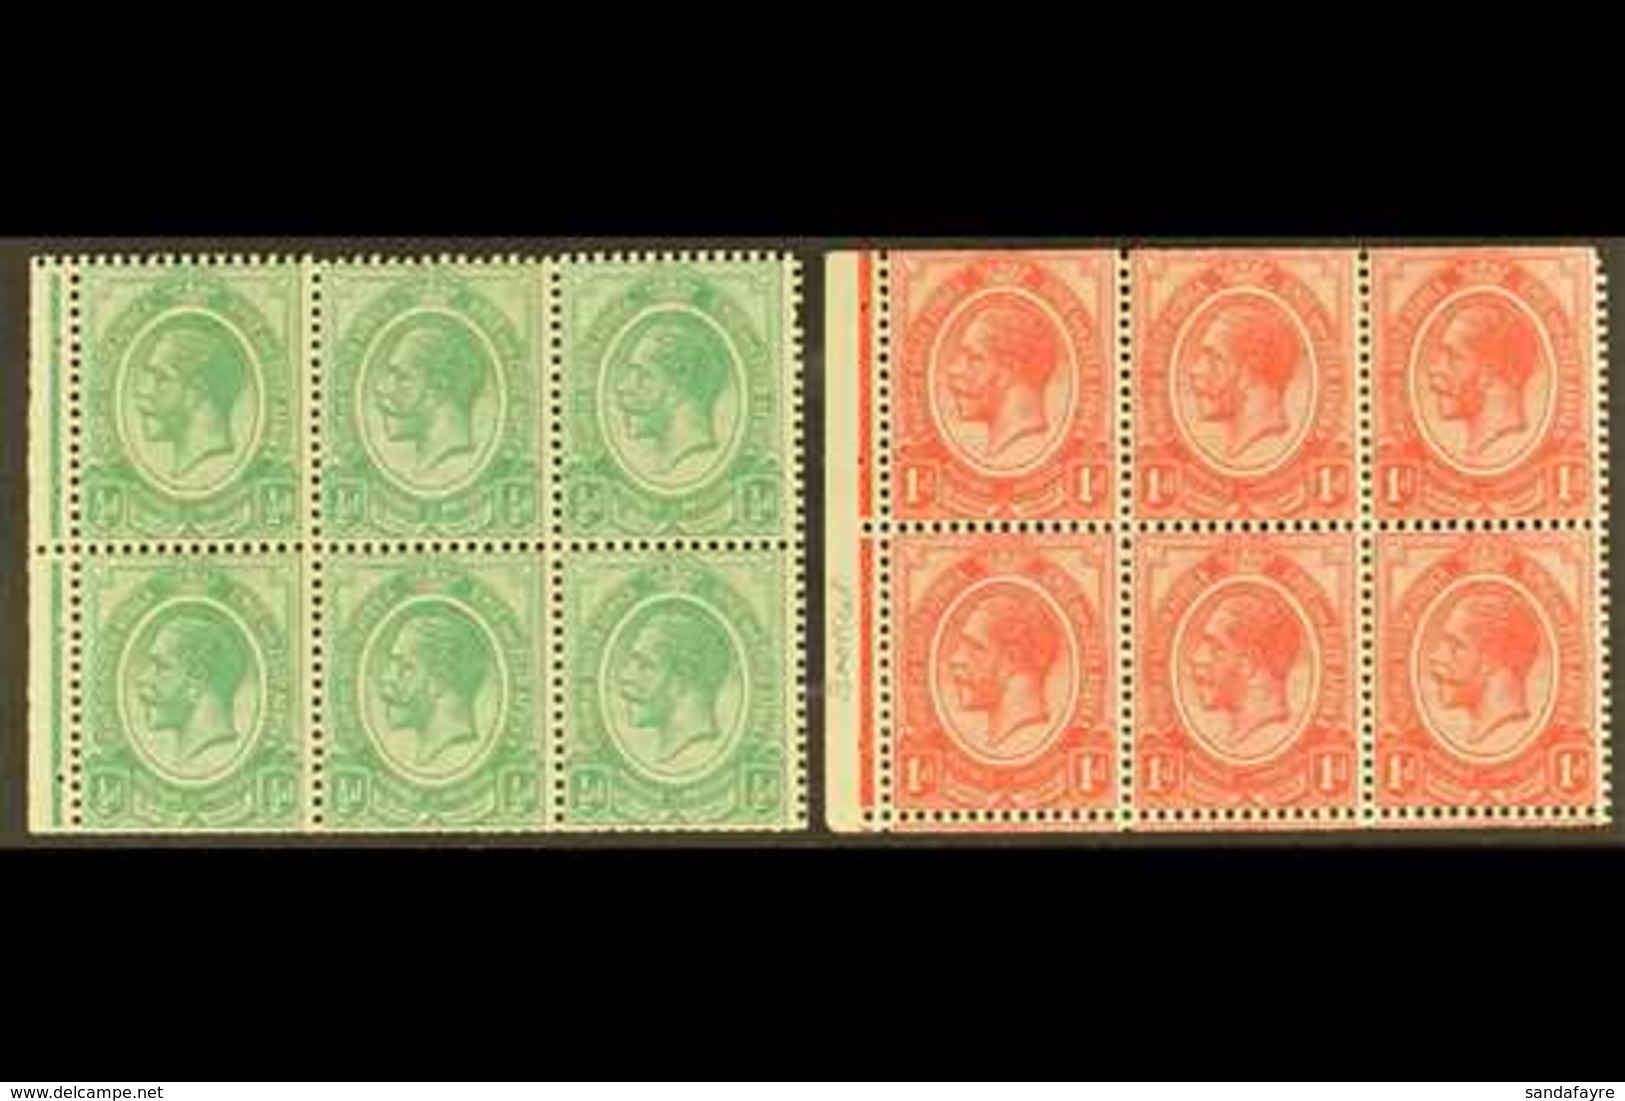 BOOKLET PANES  1913-20 ½d & 1d Panes, Wmk Inverted, SG 3/4, Fine Mint, Trimmed Perfs (2 Panes). For More Images, Please  - Non Classés